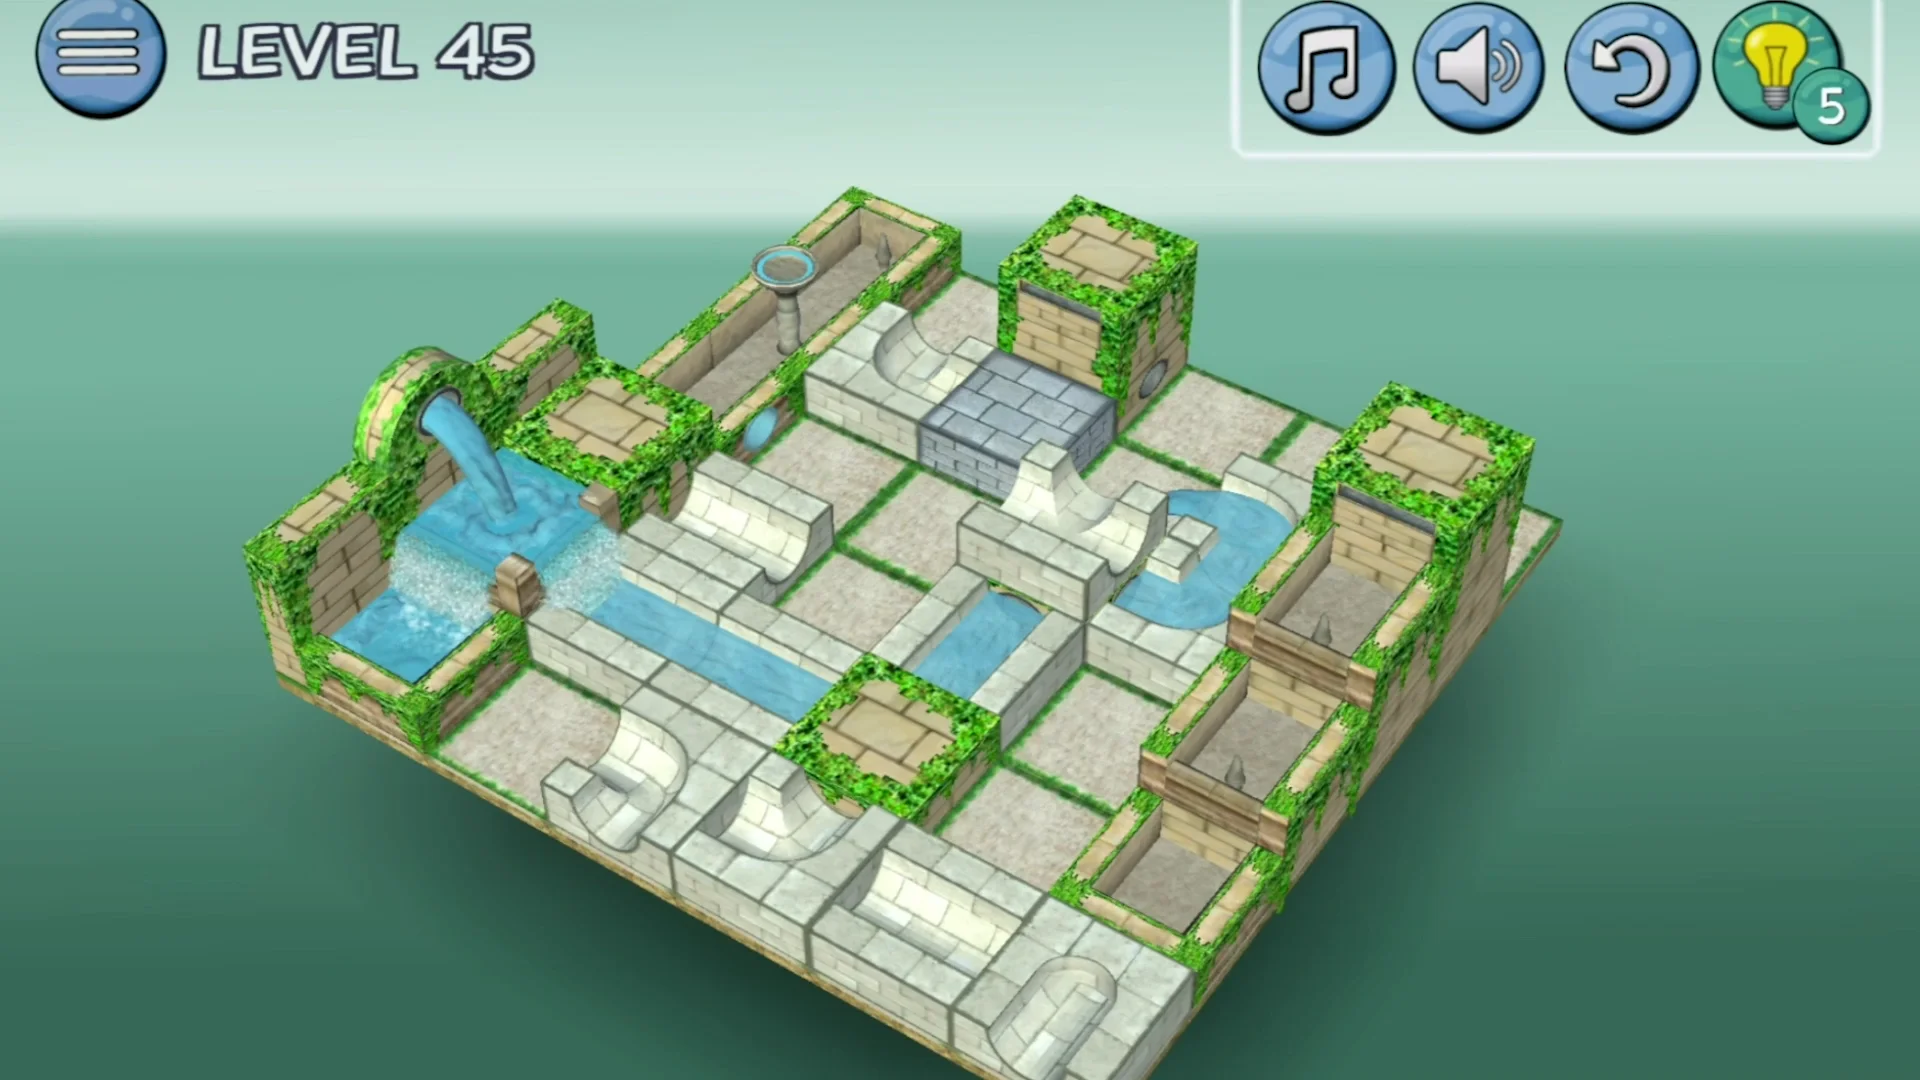 Jogo Water Flow Game no Jogos 360